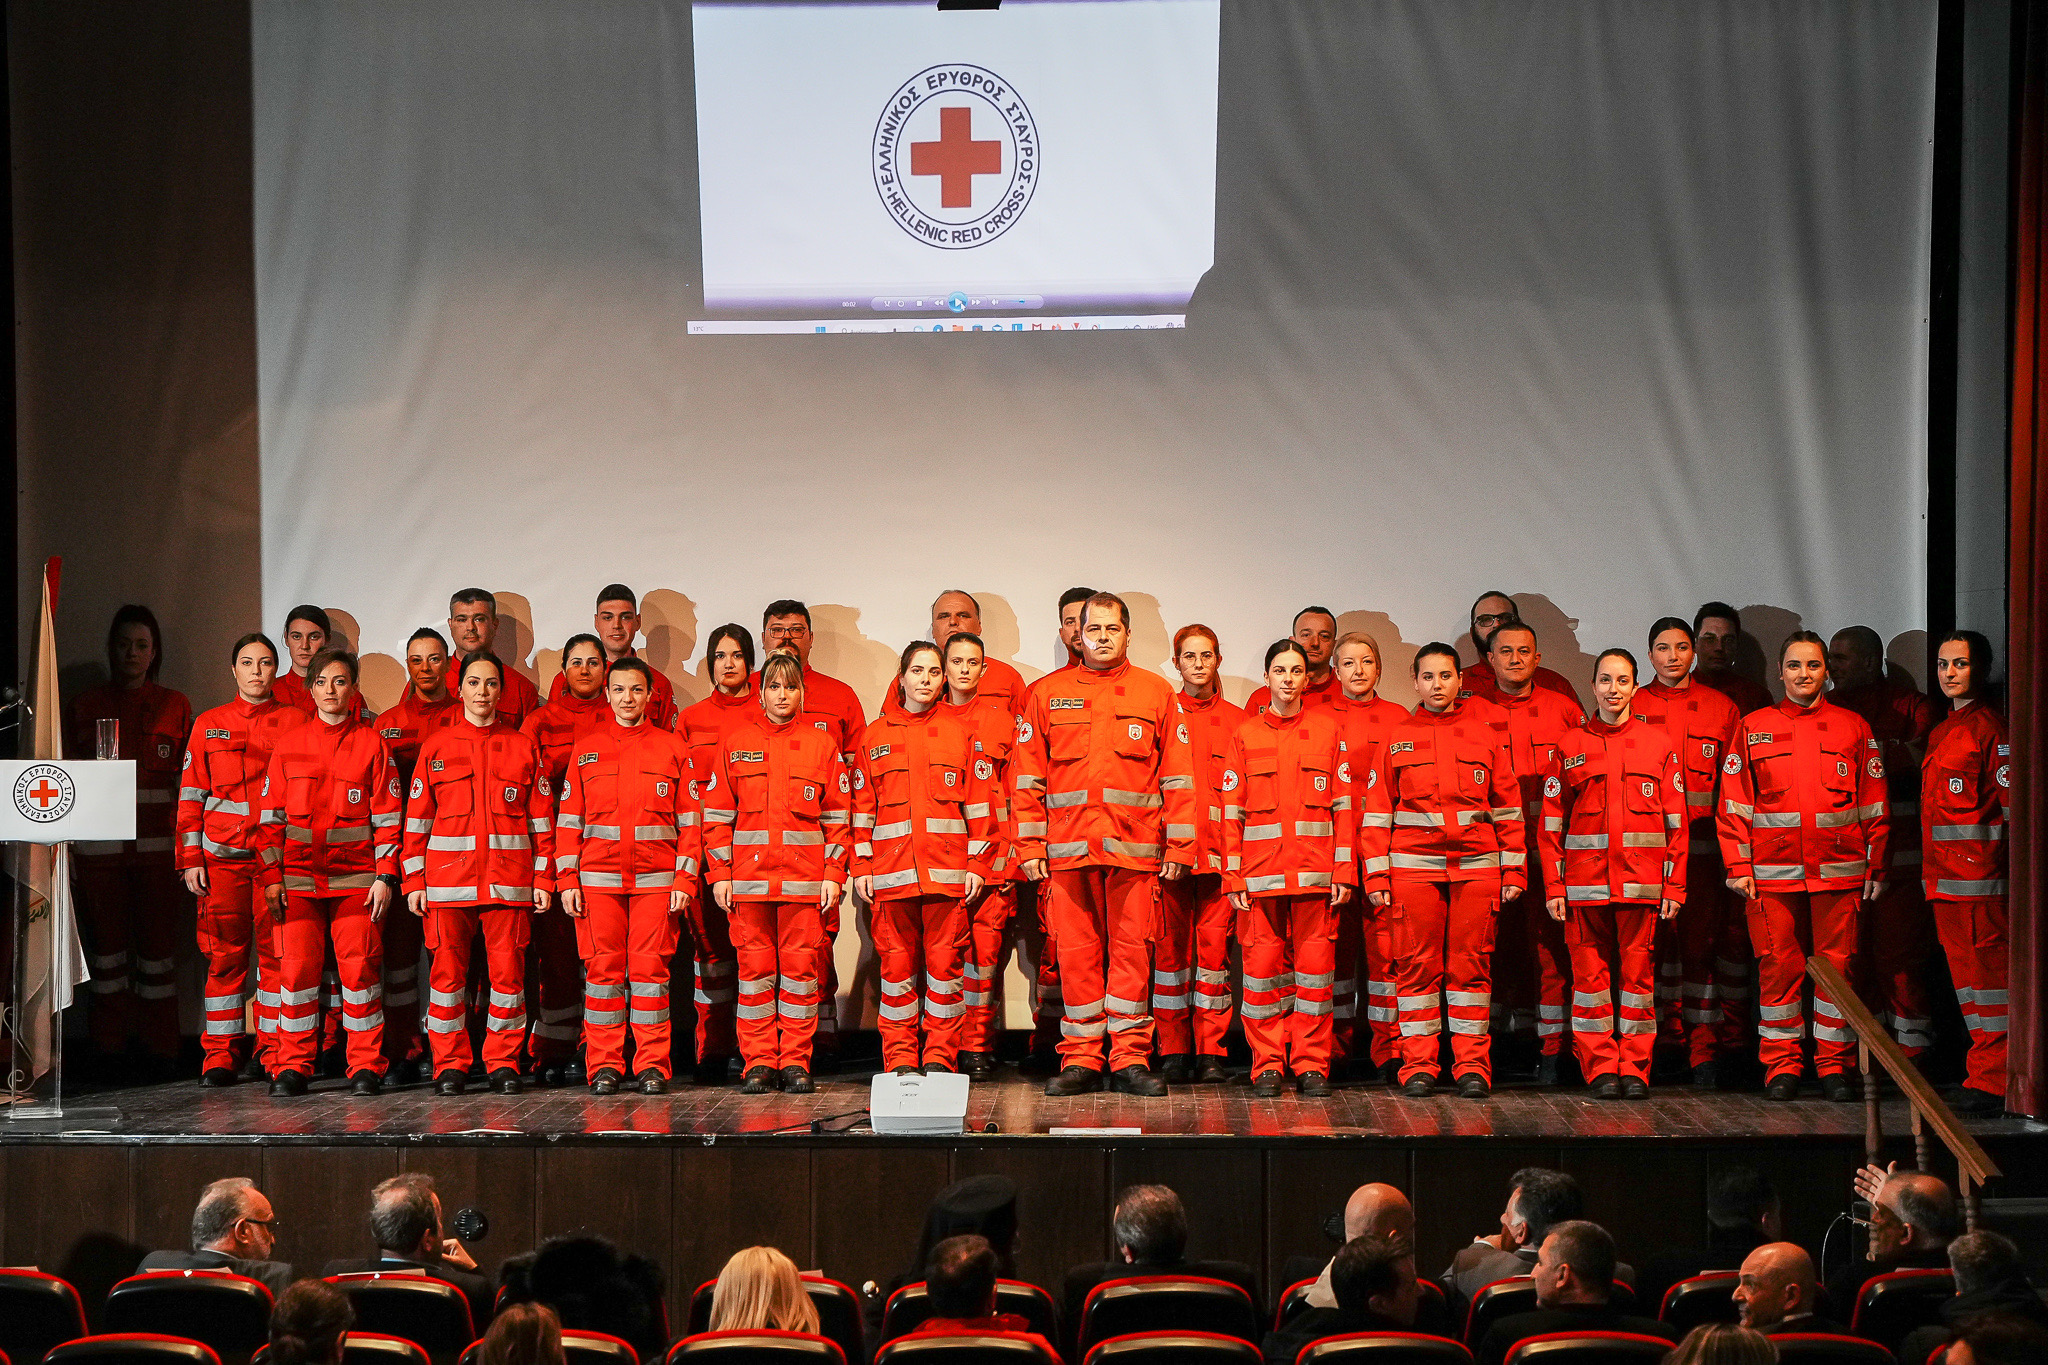 Κομοτηνή: Τελετή Υπόσχεσης και Απονομής Πτυχίων και Προαγωγών 45 Εθελοντών Σαμαρειτών -Διασωστών του Π.Τ. Ελληνικού Ερυθρού Σταυρού Κομοτηνής (φωτος)